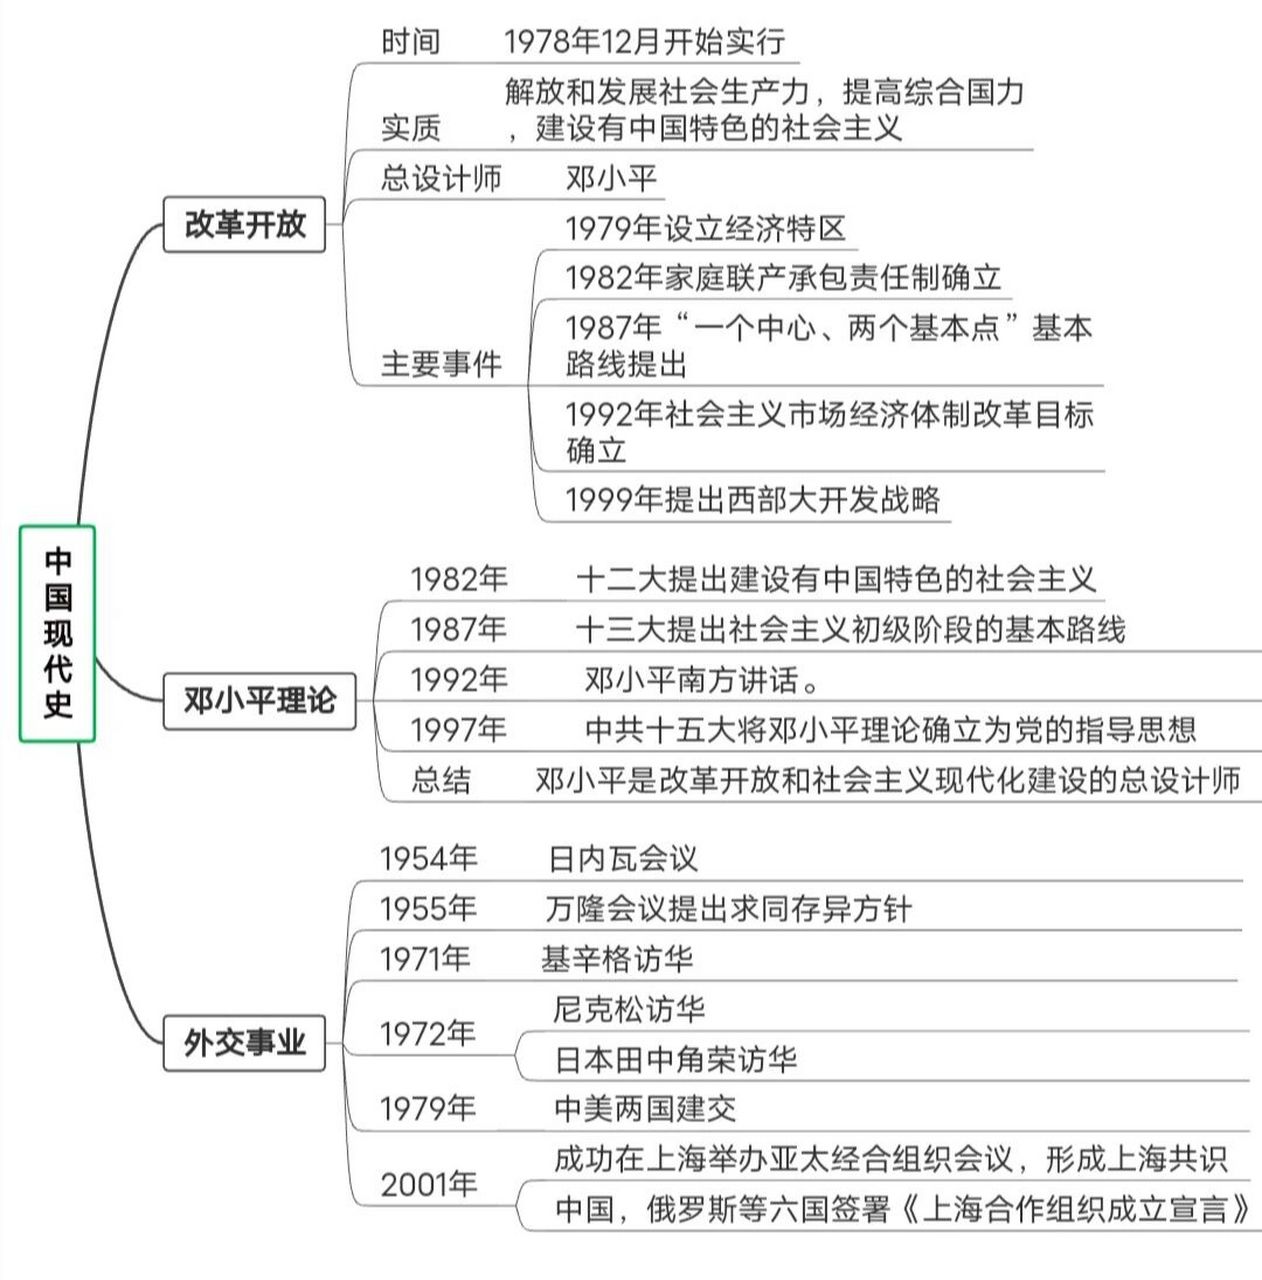 思维图——中国现代史 思维导图带你了解中国现代史,后续持续更新,求